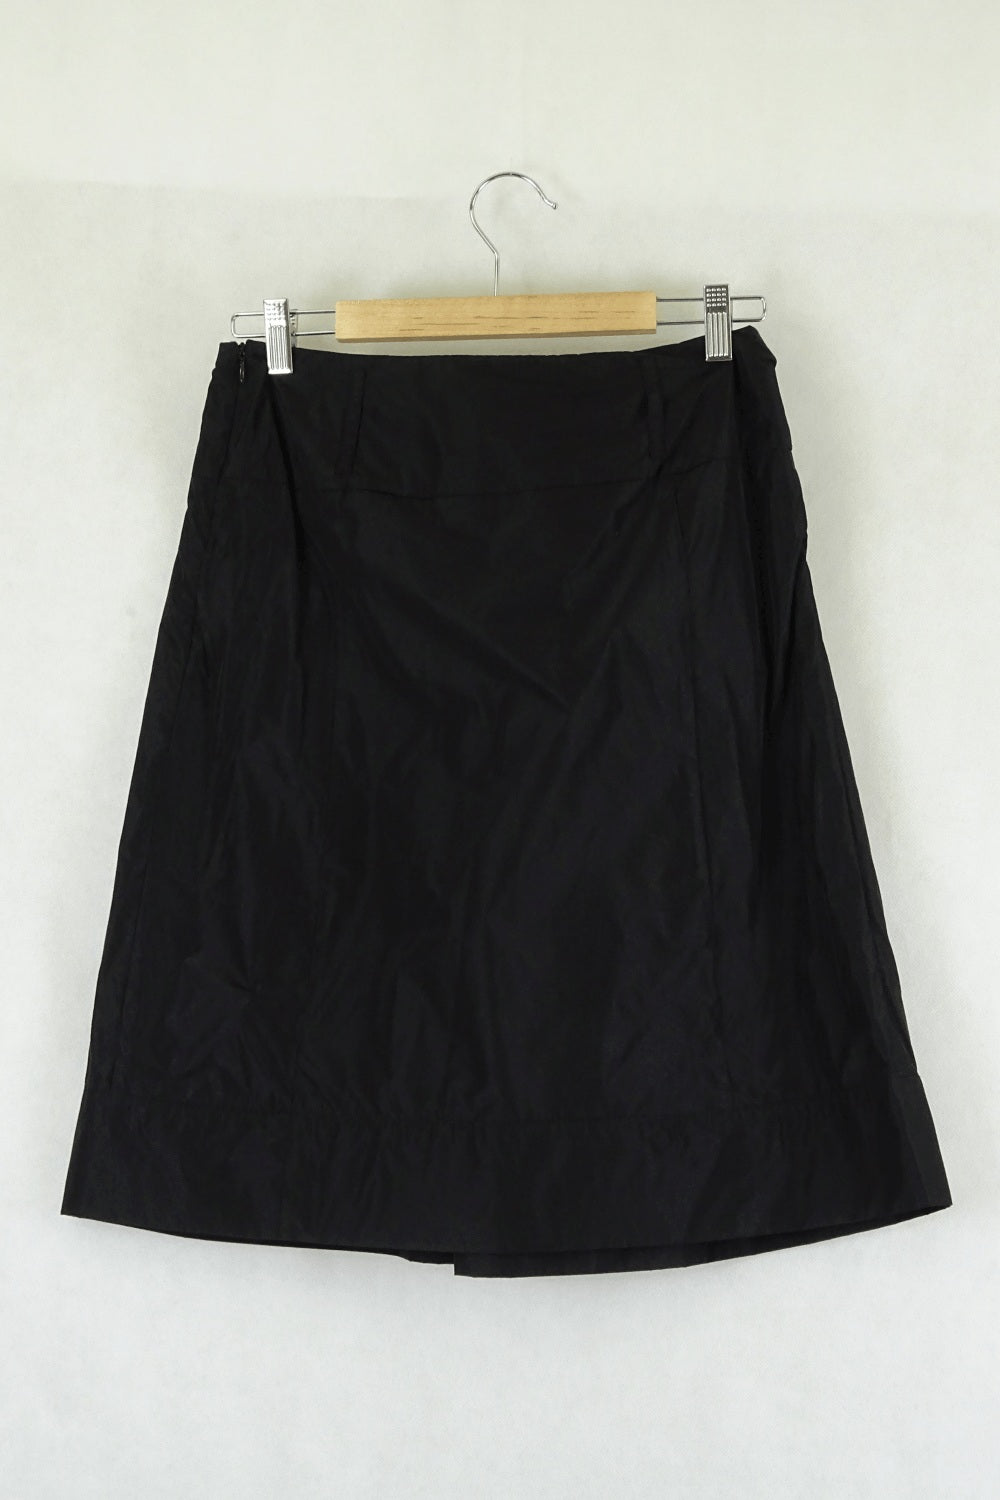 Jacqui E Black Skirt 8